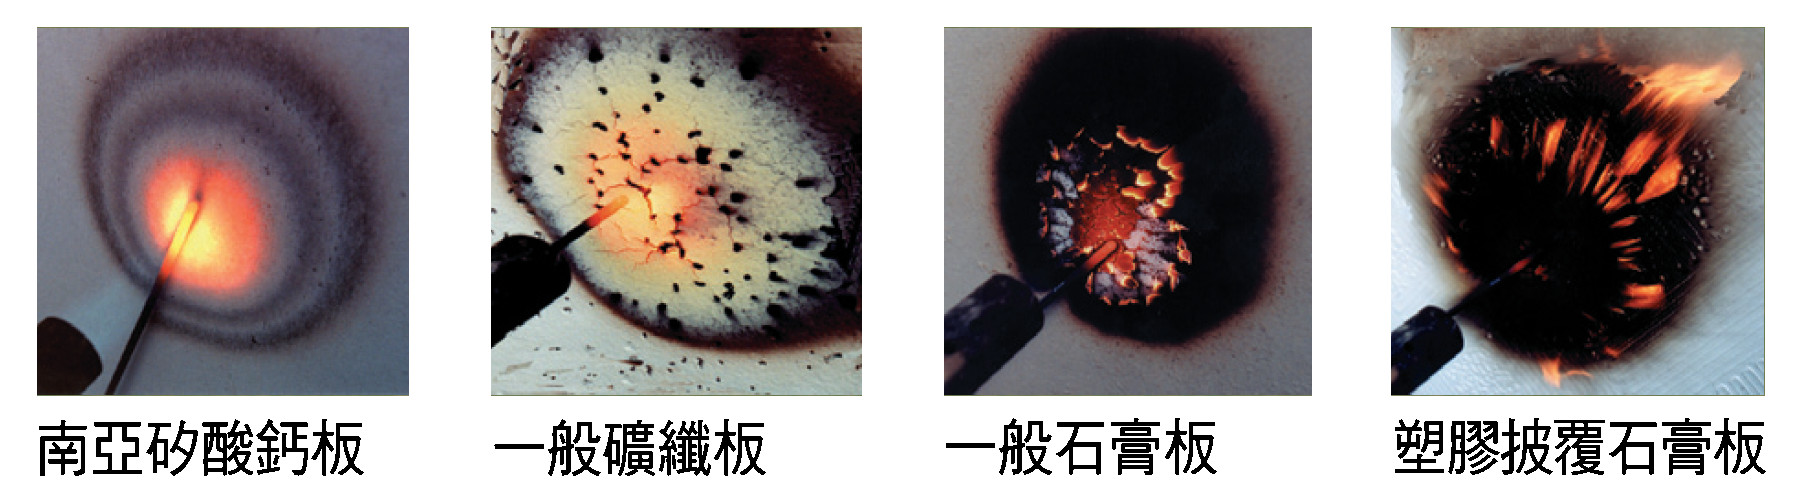 永逢-防火綠建材(矽酸鈣板)-南亞矽酸鈣板vs他牌防火板_耐燃性比較